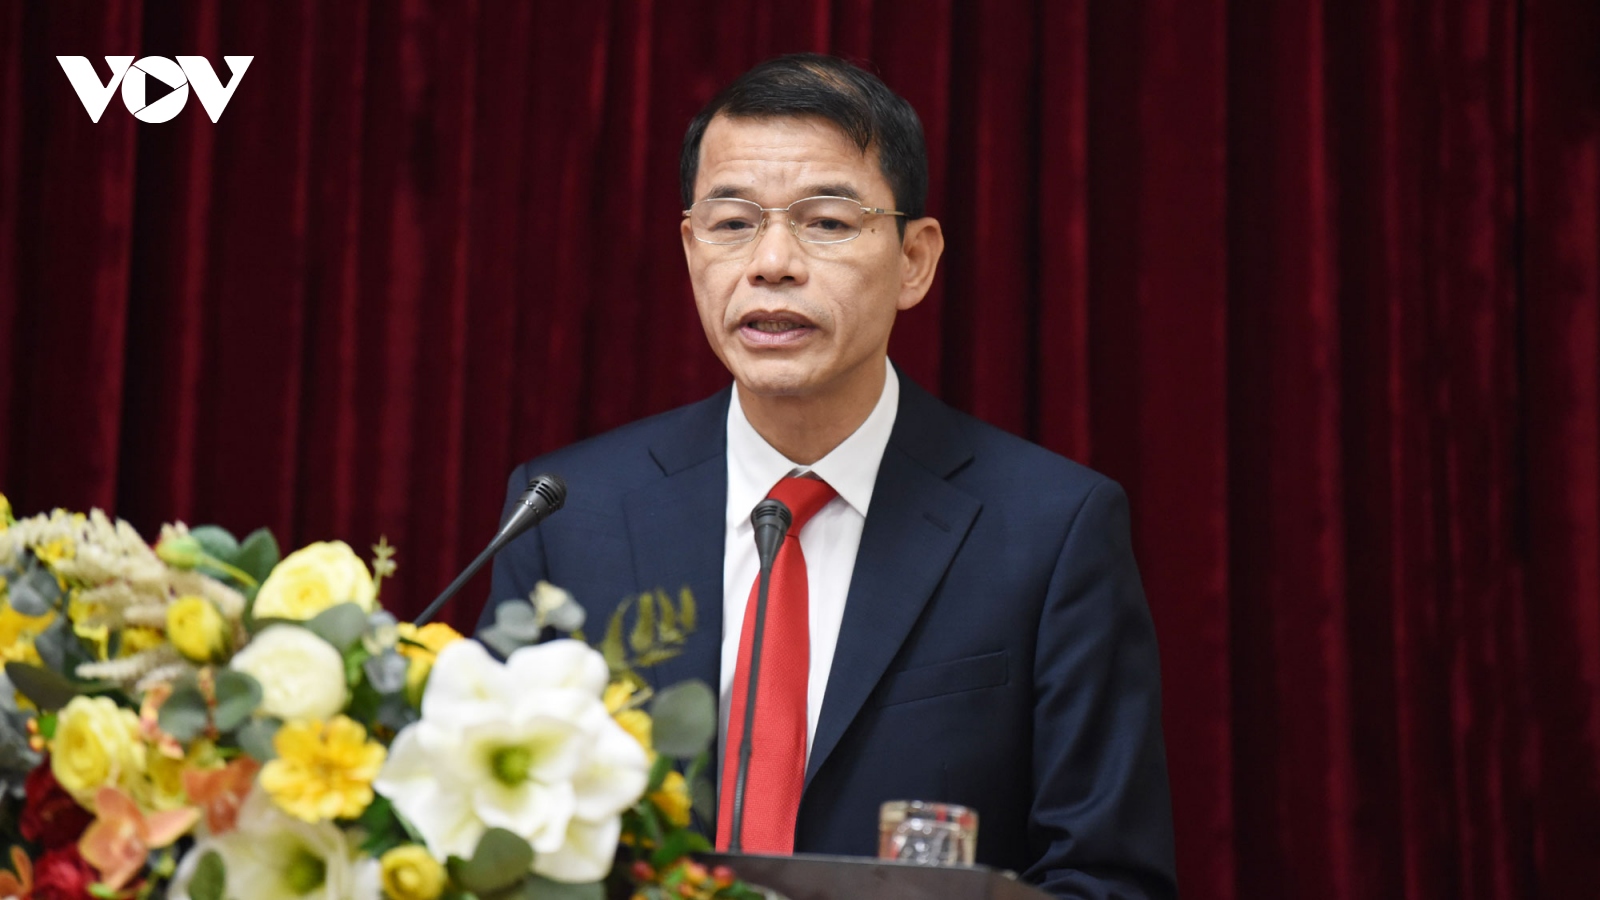 Ông Vũ Thanh Mai giữ chức Phó Trưởng Ban Tuyên giáo Trung ương